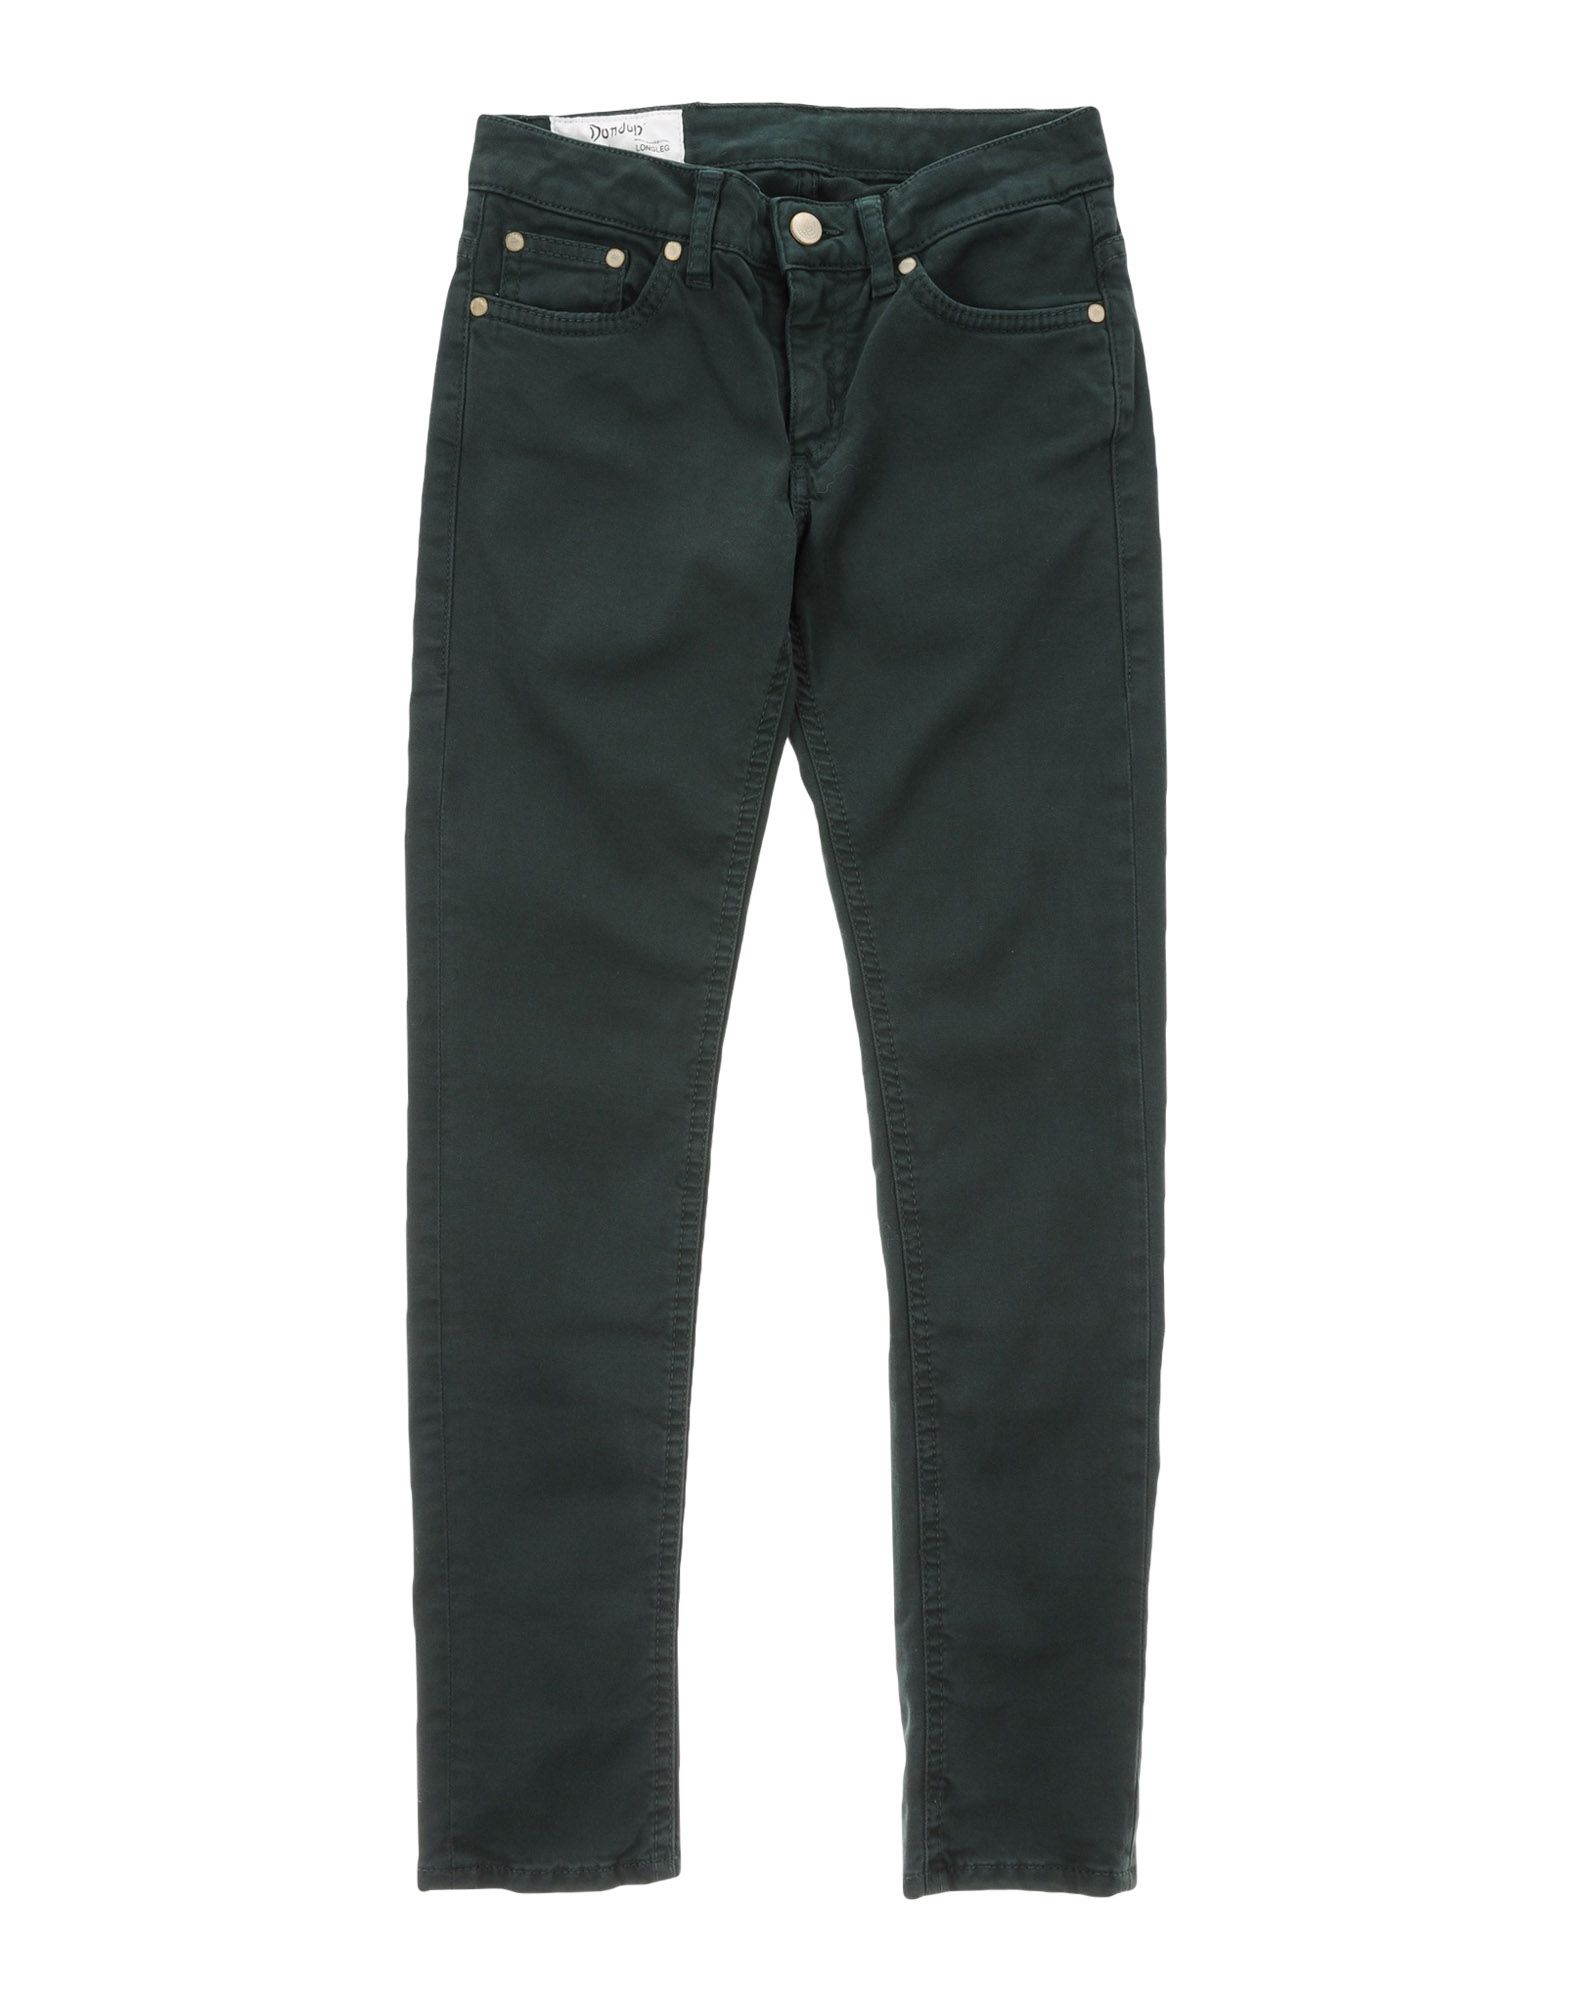 Повседневные брюки  - Бежевый,Зеленый,Черный цвет